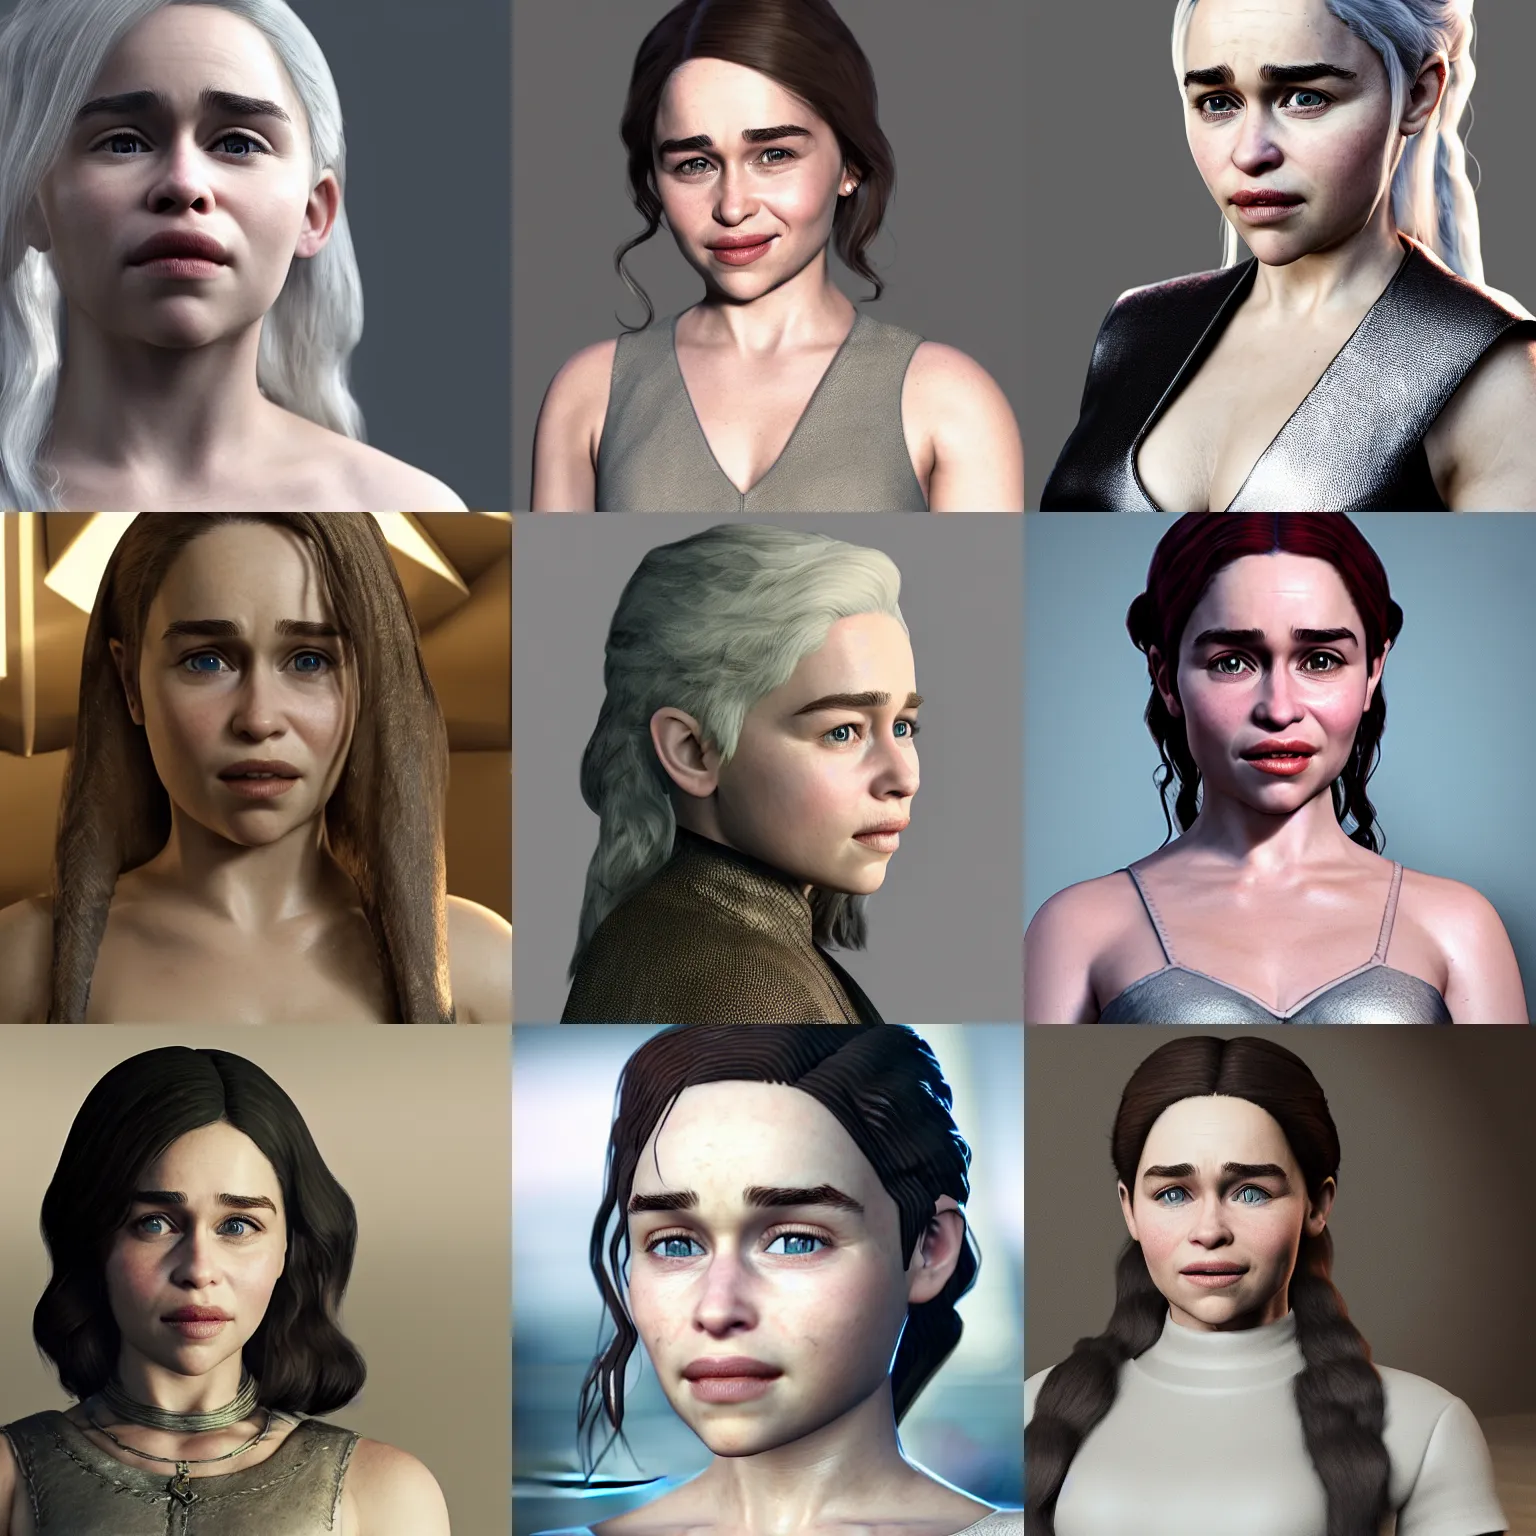 Prompt: 3D render of Emilia Clarke, Unreal Engine, 4K